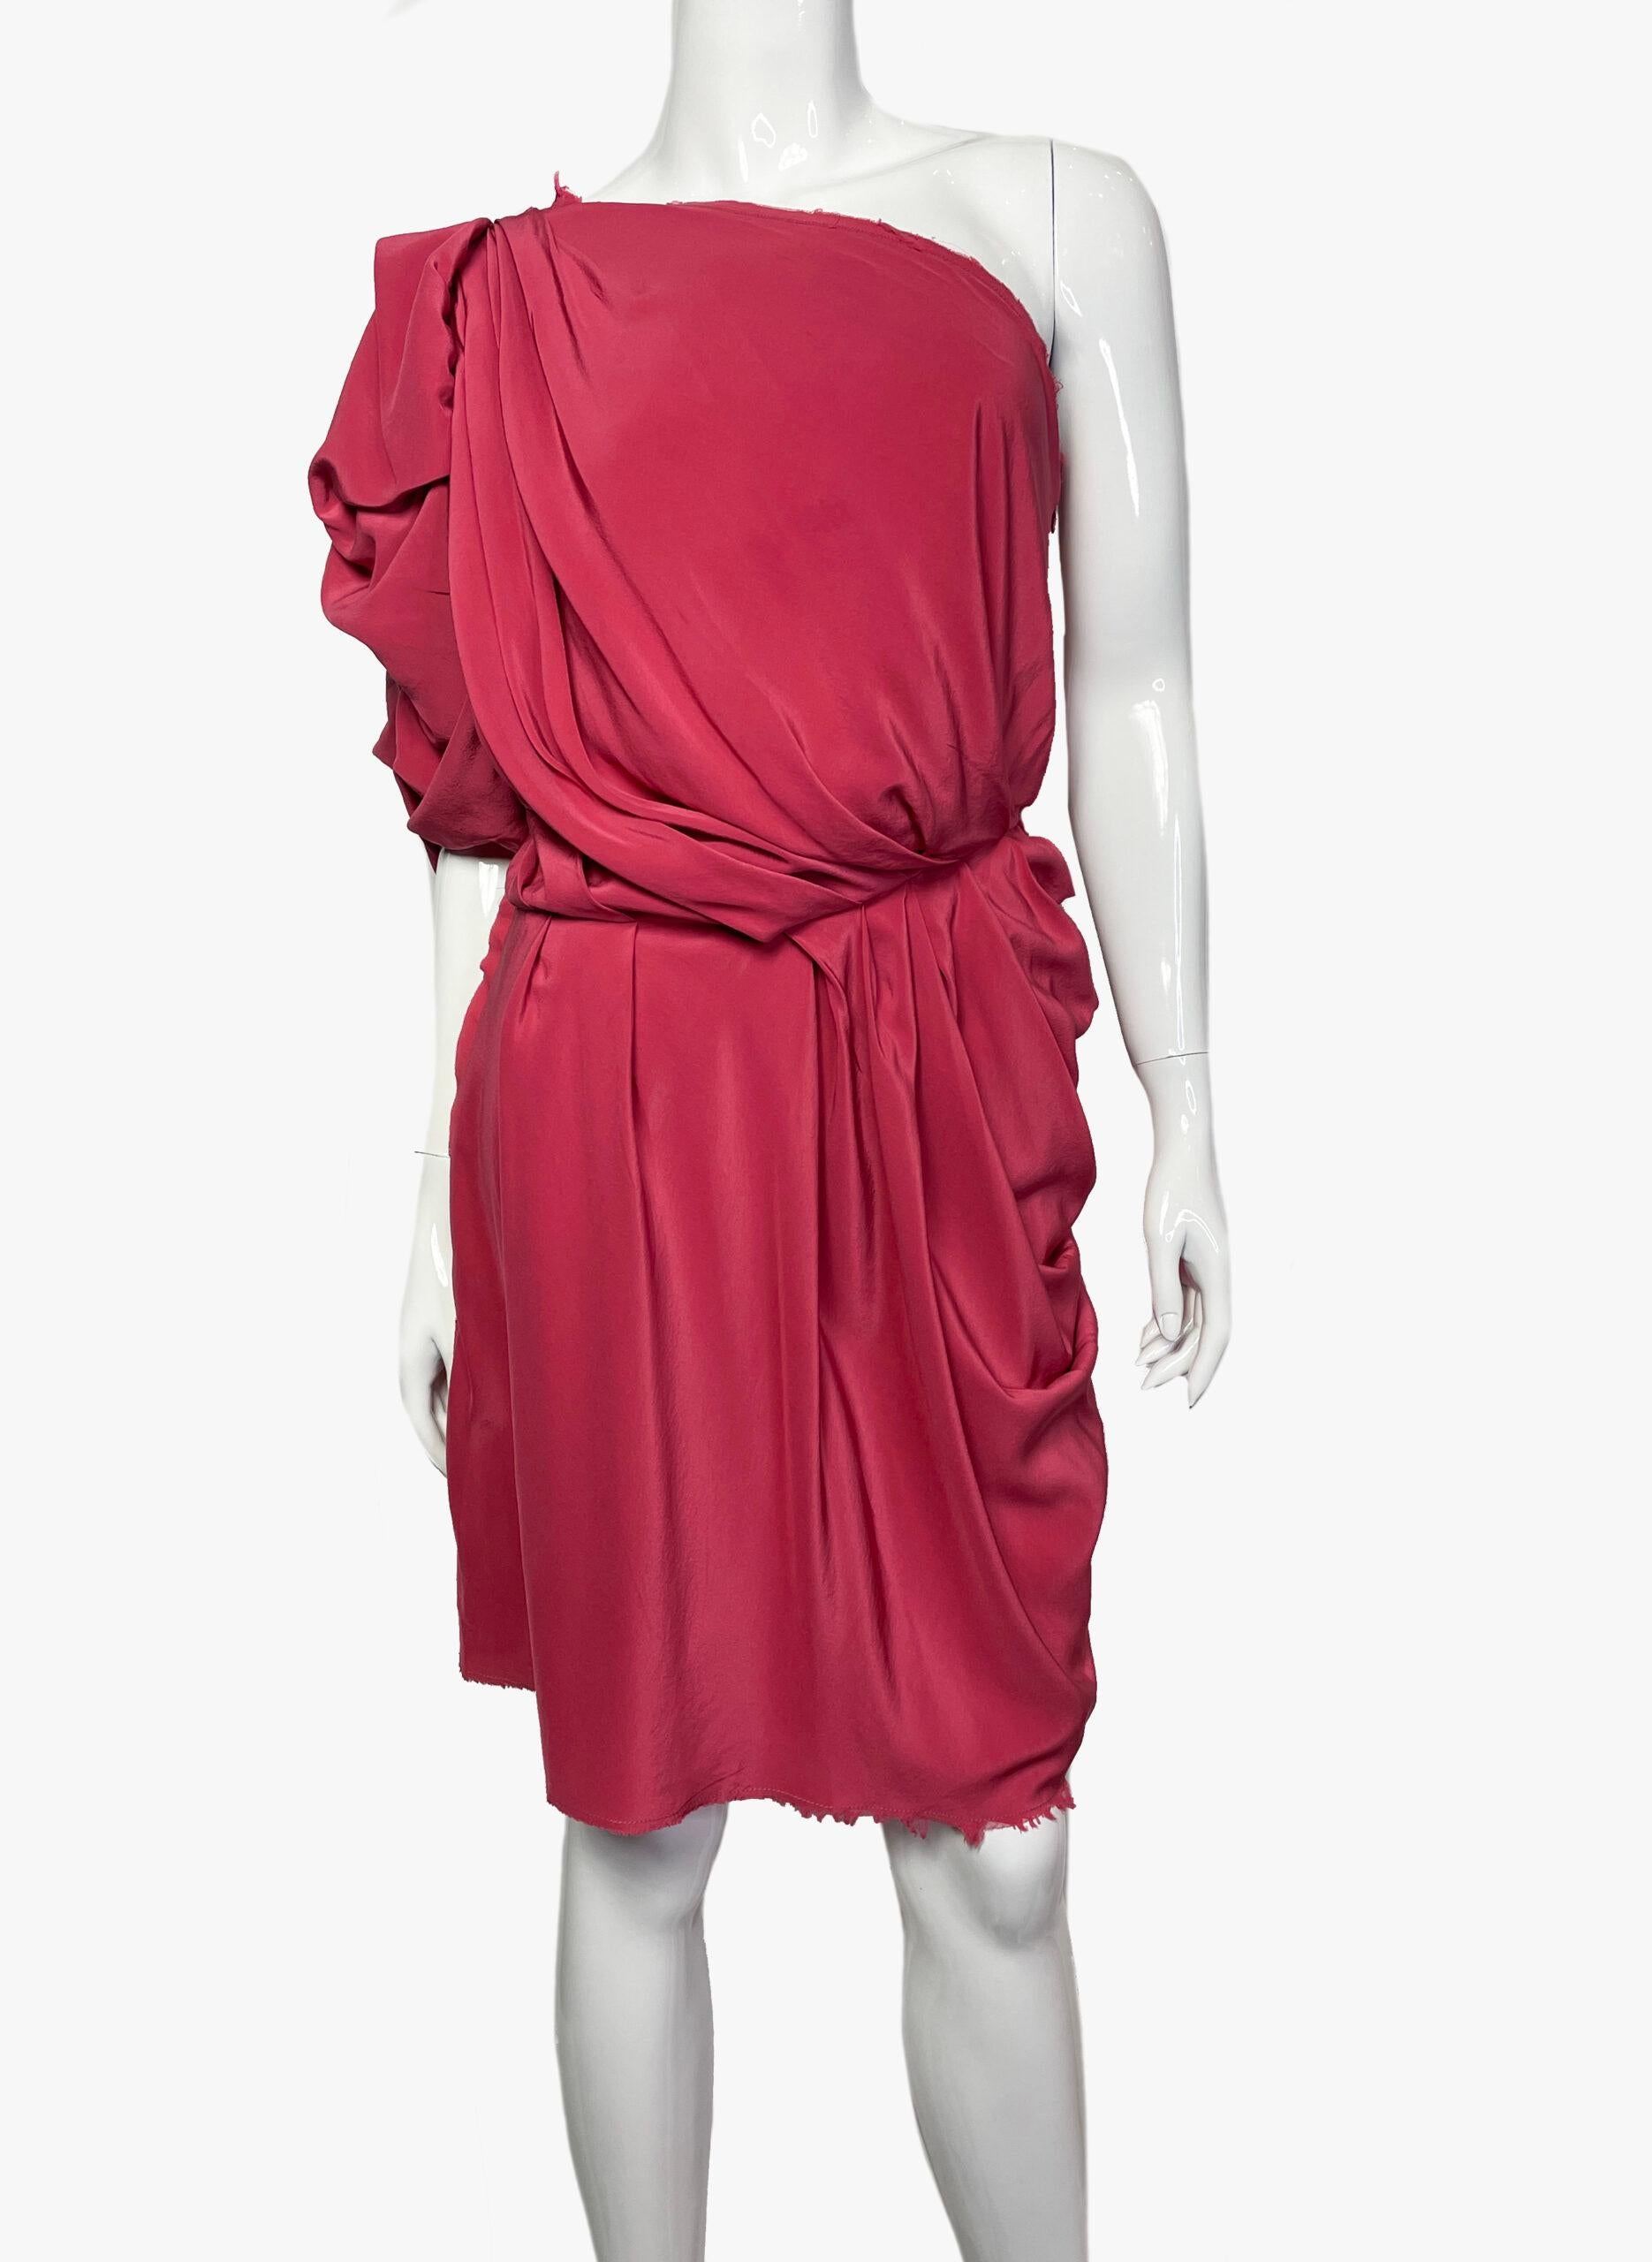 Mini robe drapée à une épaule Lanvin par Alber Elbaz en rouge. 
Collectional 2010
Tissu : 100% soie
Taille : 38 FR (M)
Condit : Parfait

........Informations complémentaires ........

- La photo peut être légèrement différente de l'article réel en